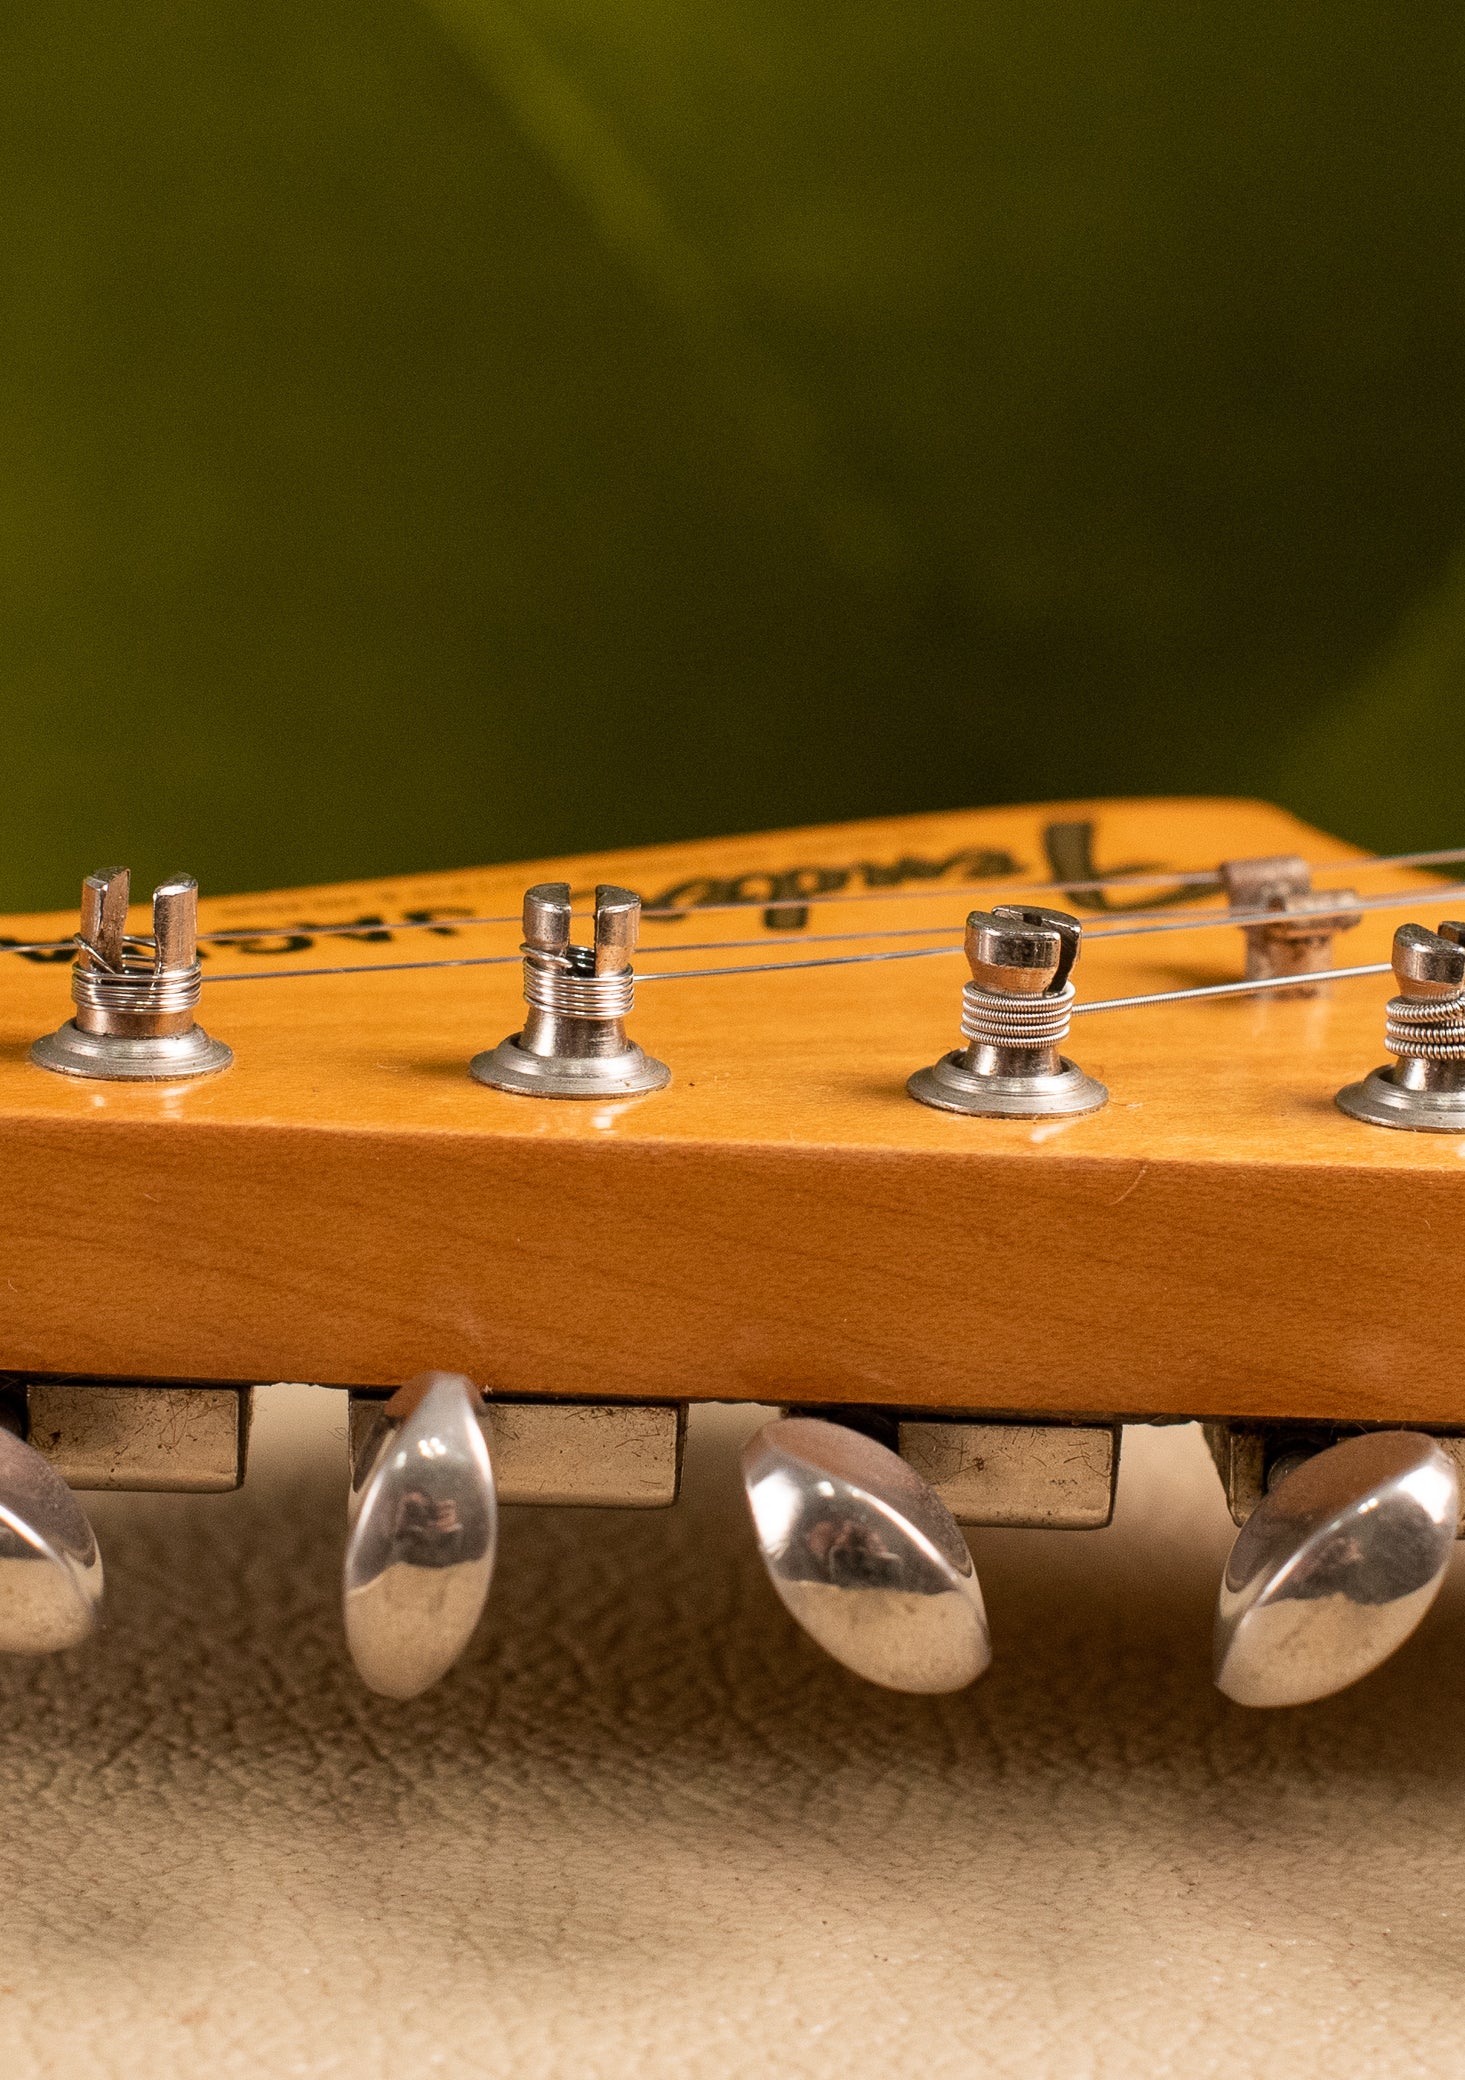 Bass VI, Fender 6 tuner, Vintage 1963 Fender Jaguar Sunburst guitar